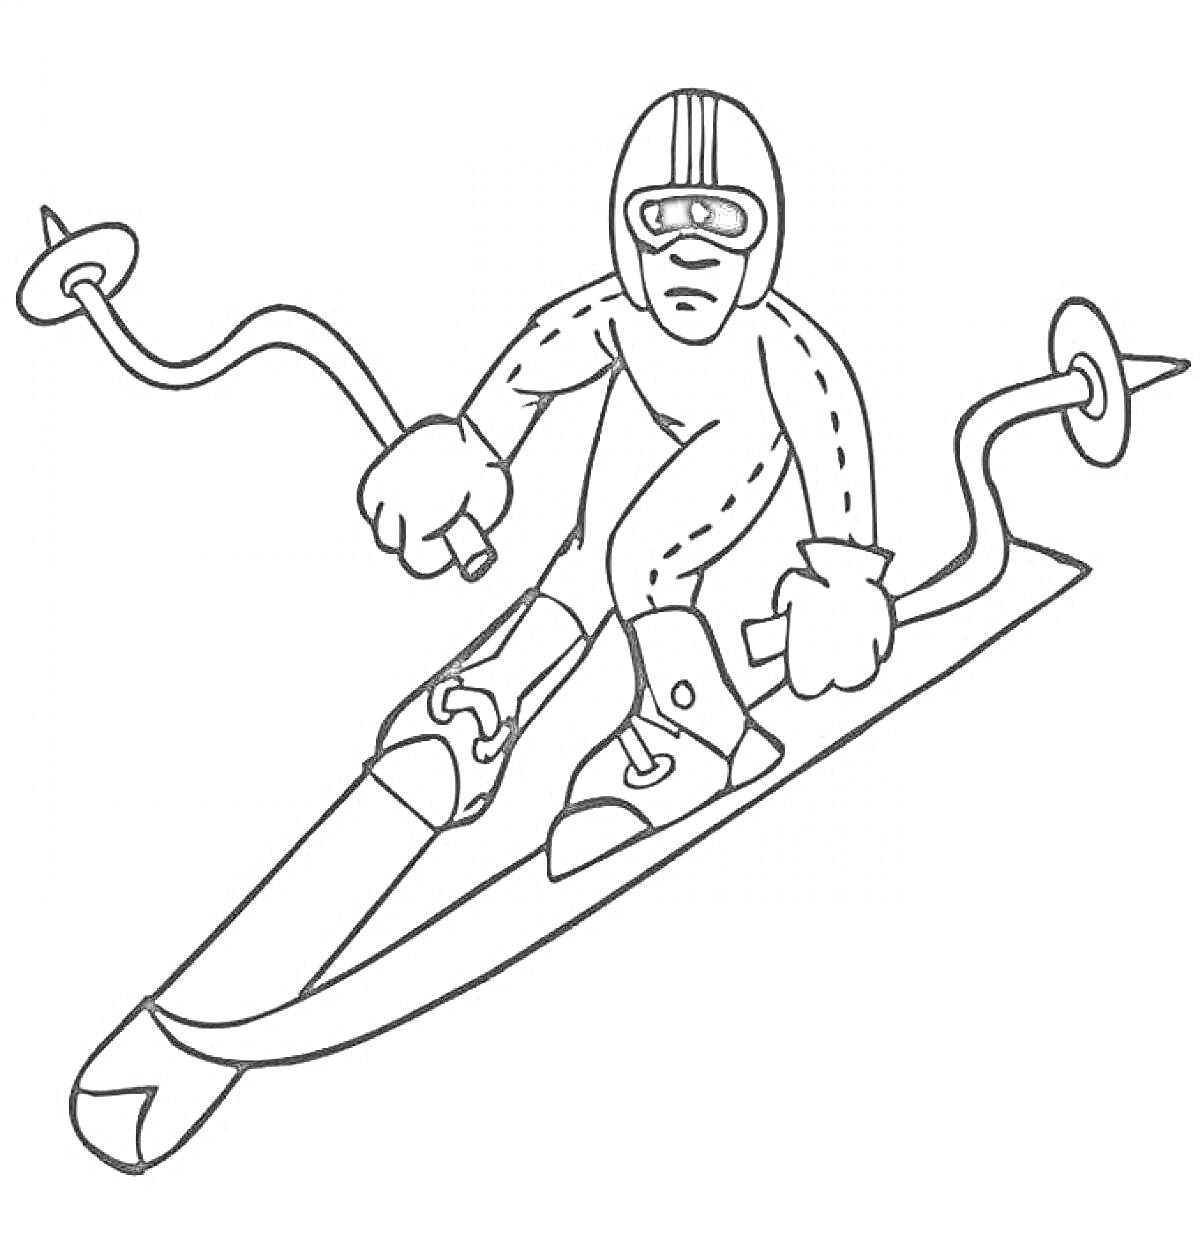 Горнолыжник на спуске с палками и шлемом